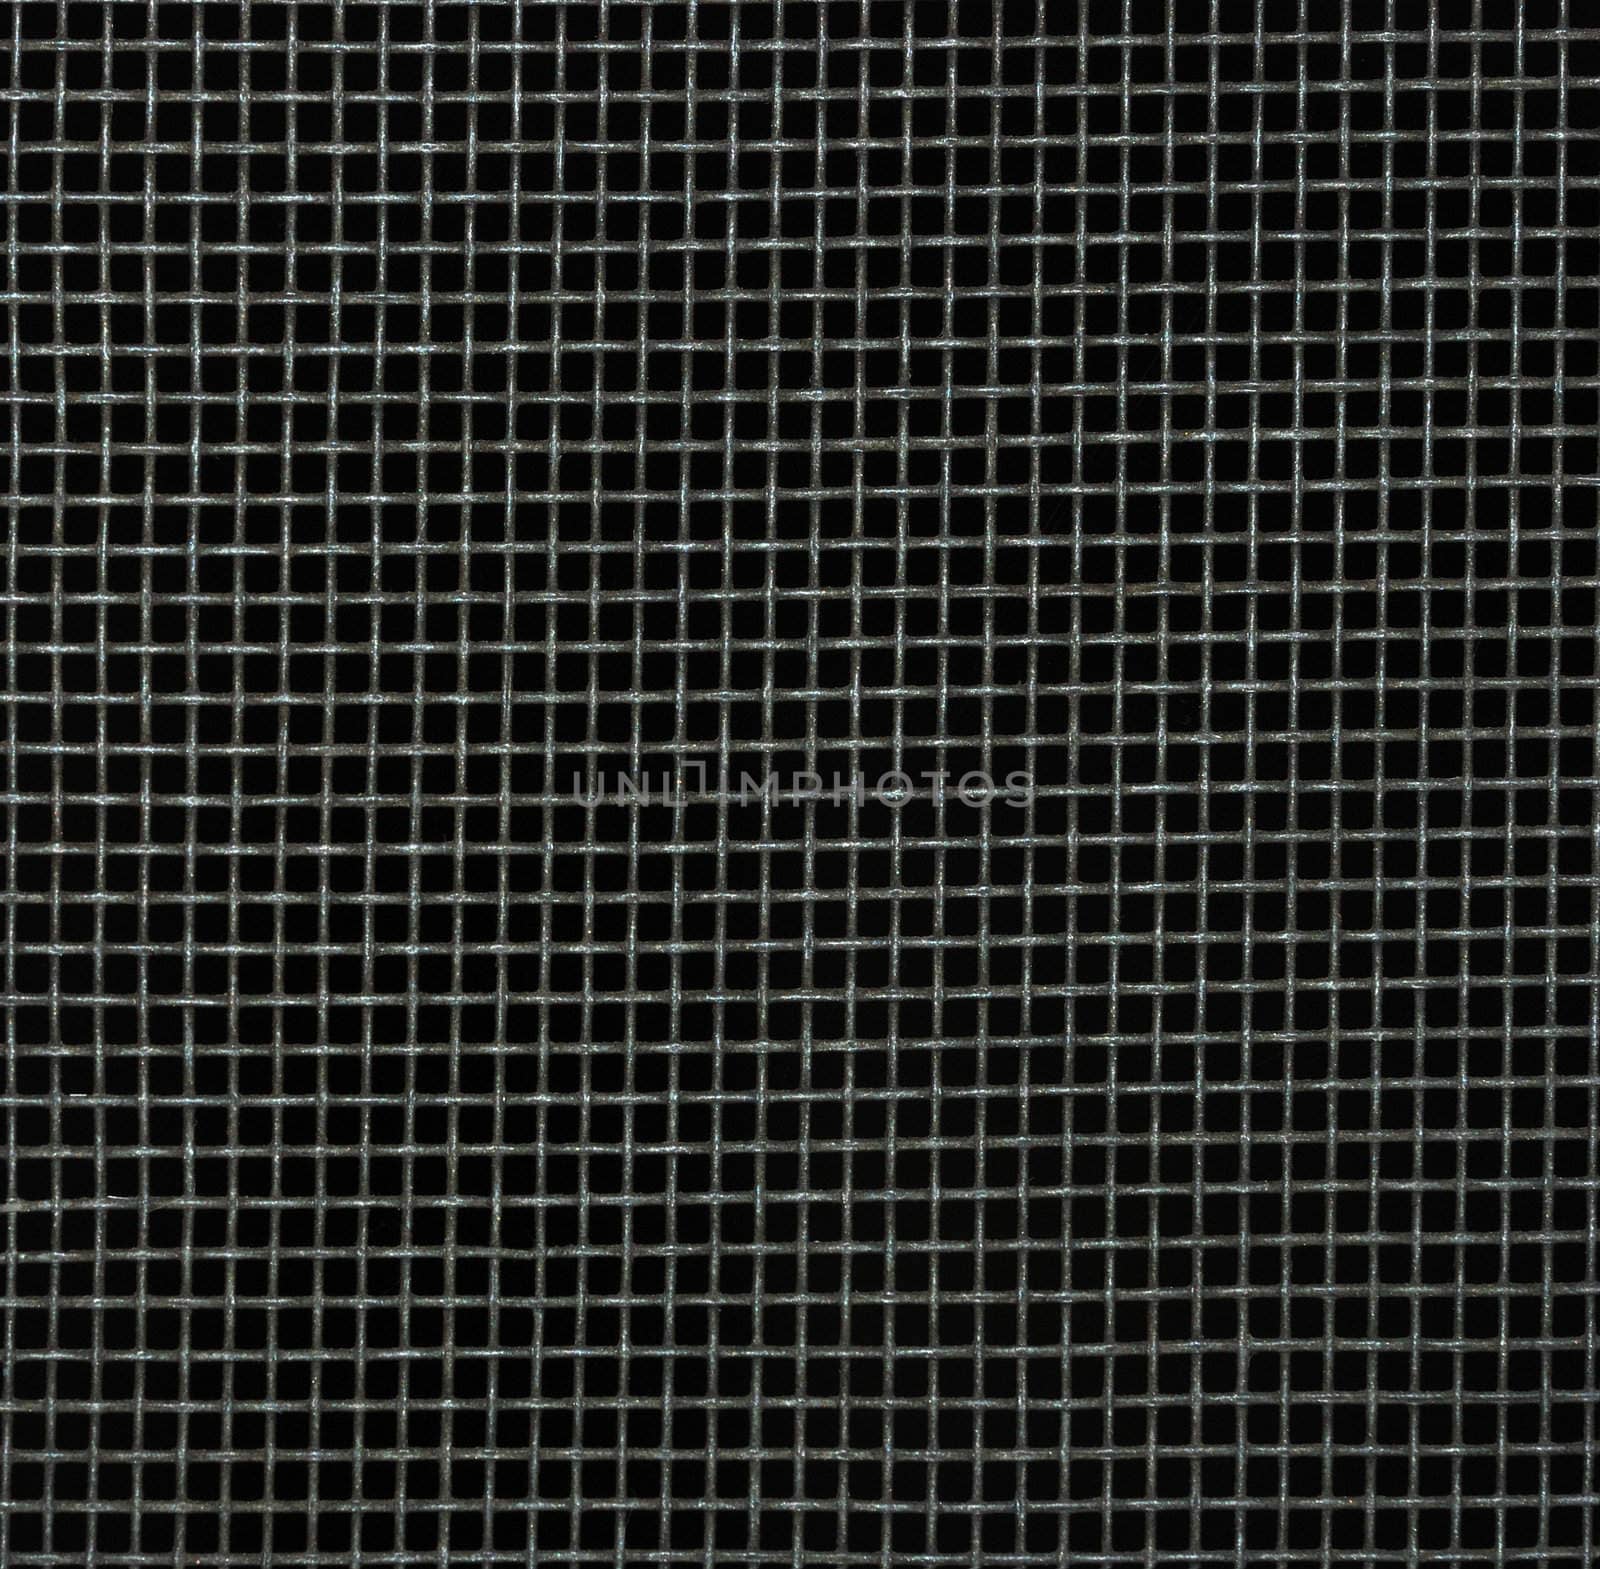 Screen door detail pattern against dark background.